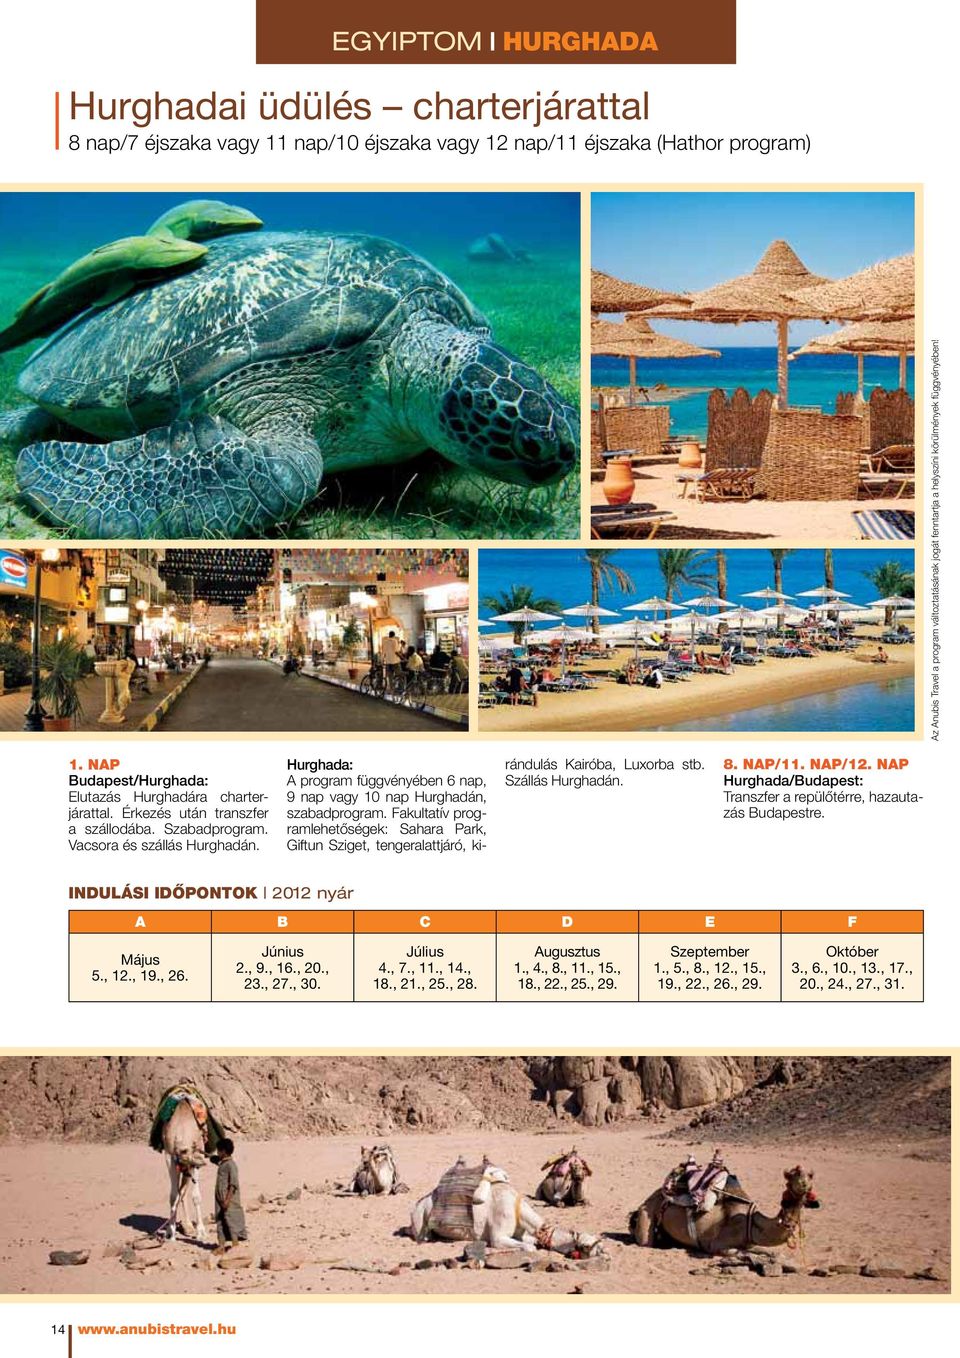 Hurghada: A program függvényében 6 nap, 9 nap vagy 10 nap Hurghadán, szabadprogram. Fakultatív programlehetőségek: Sahara Park, Giftun Sziget, tengeralattjáró, kirándulás Kairóba, Luxorba stb.